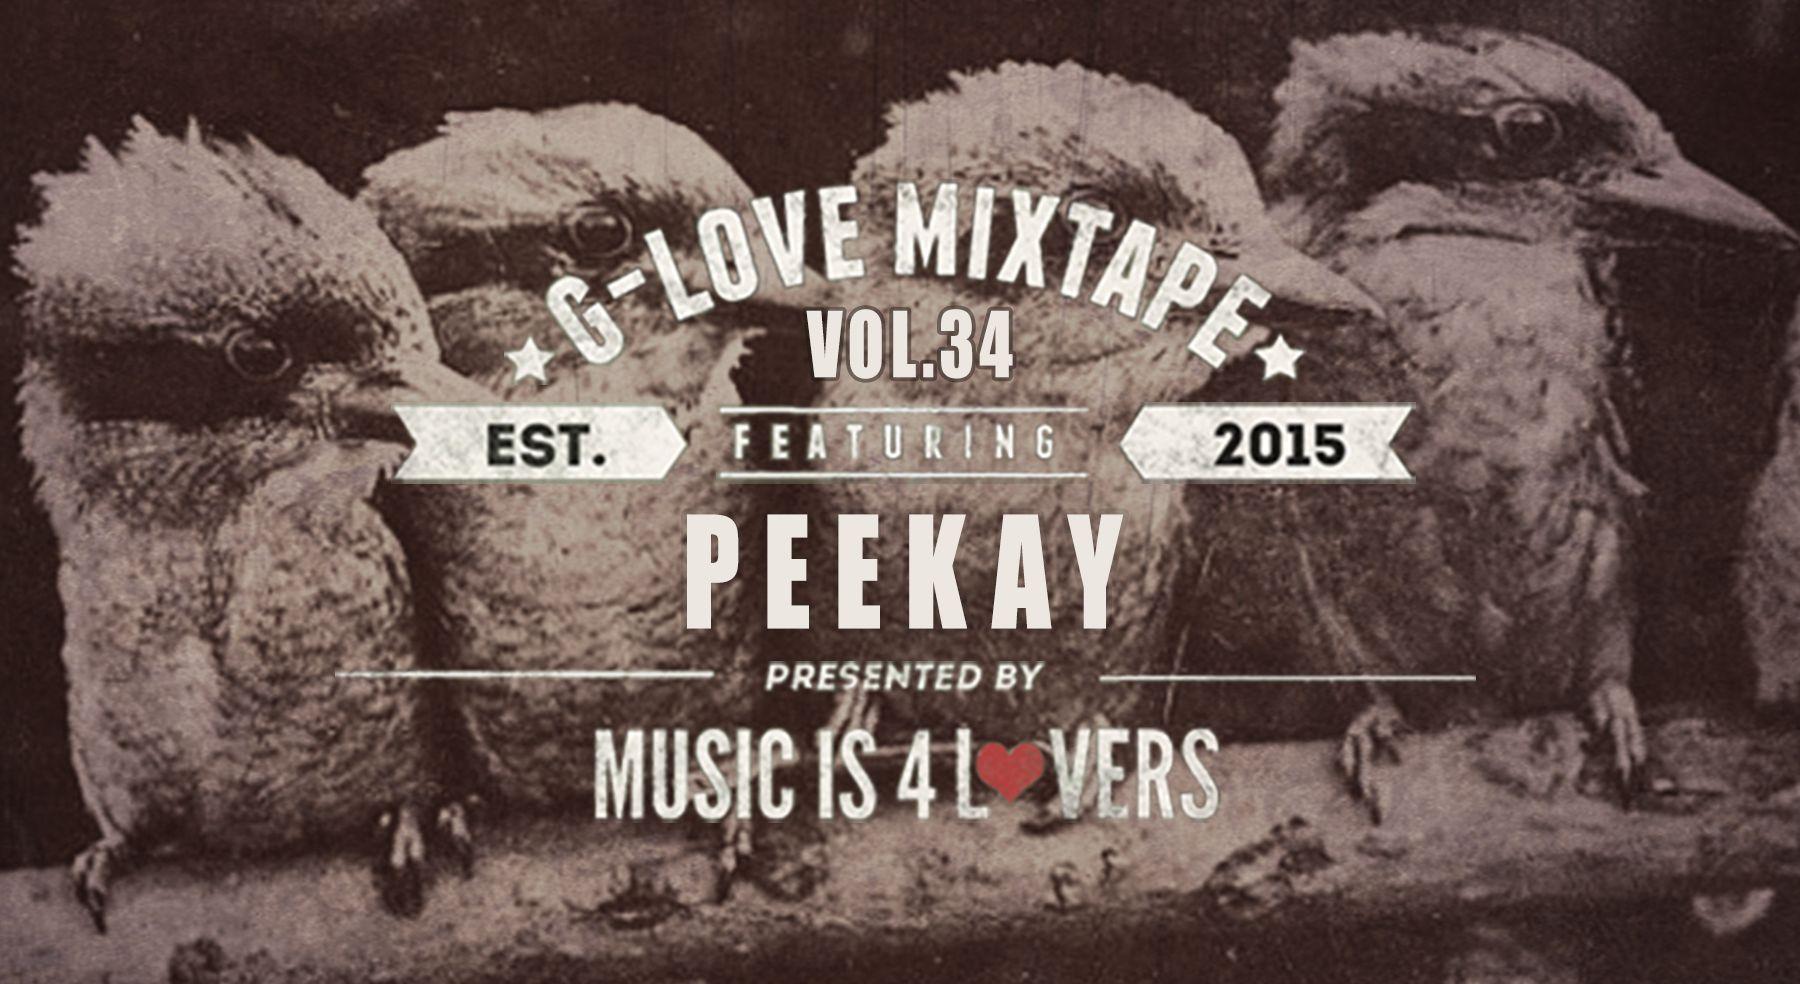 Peekay Logo - G Love Mixtape Vol.34 Featuring Peekay [MI4L.com]